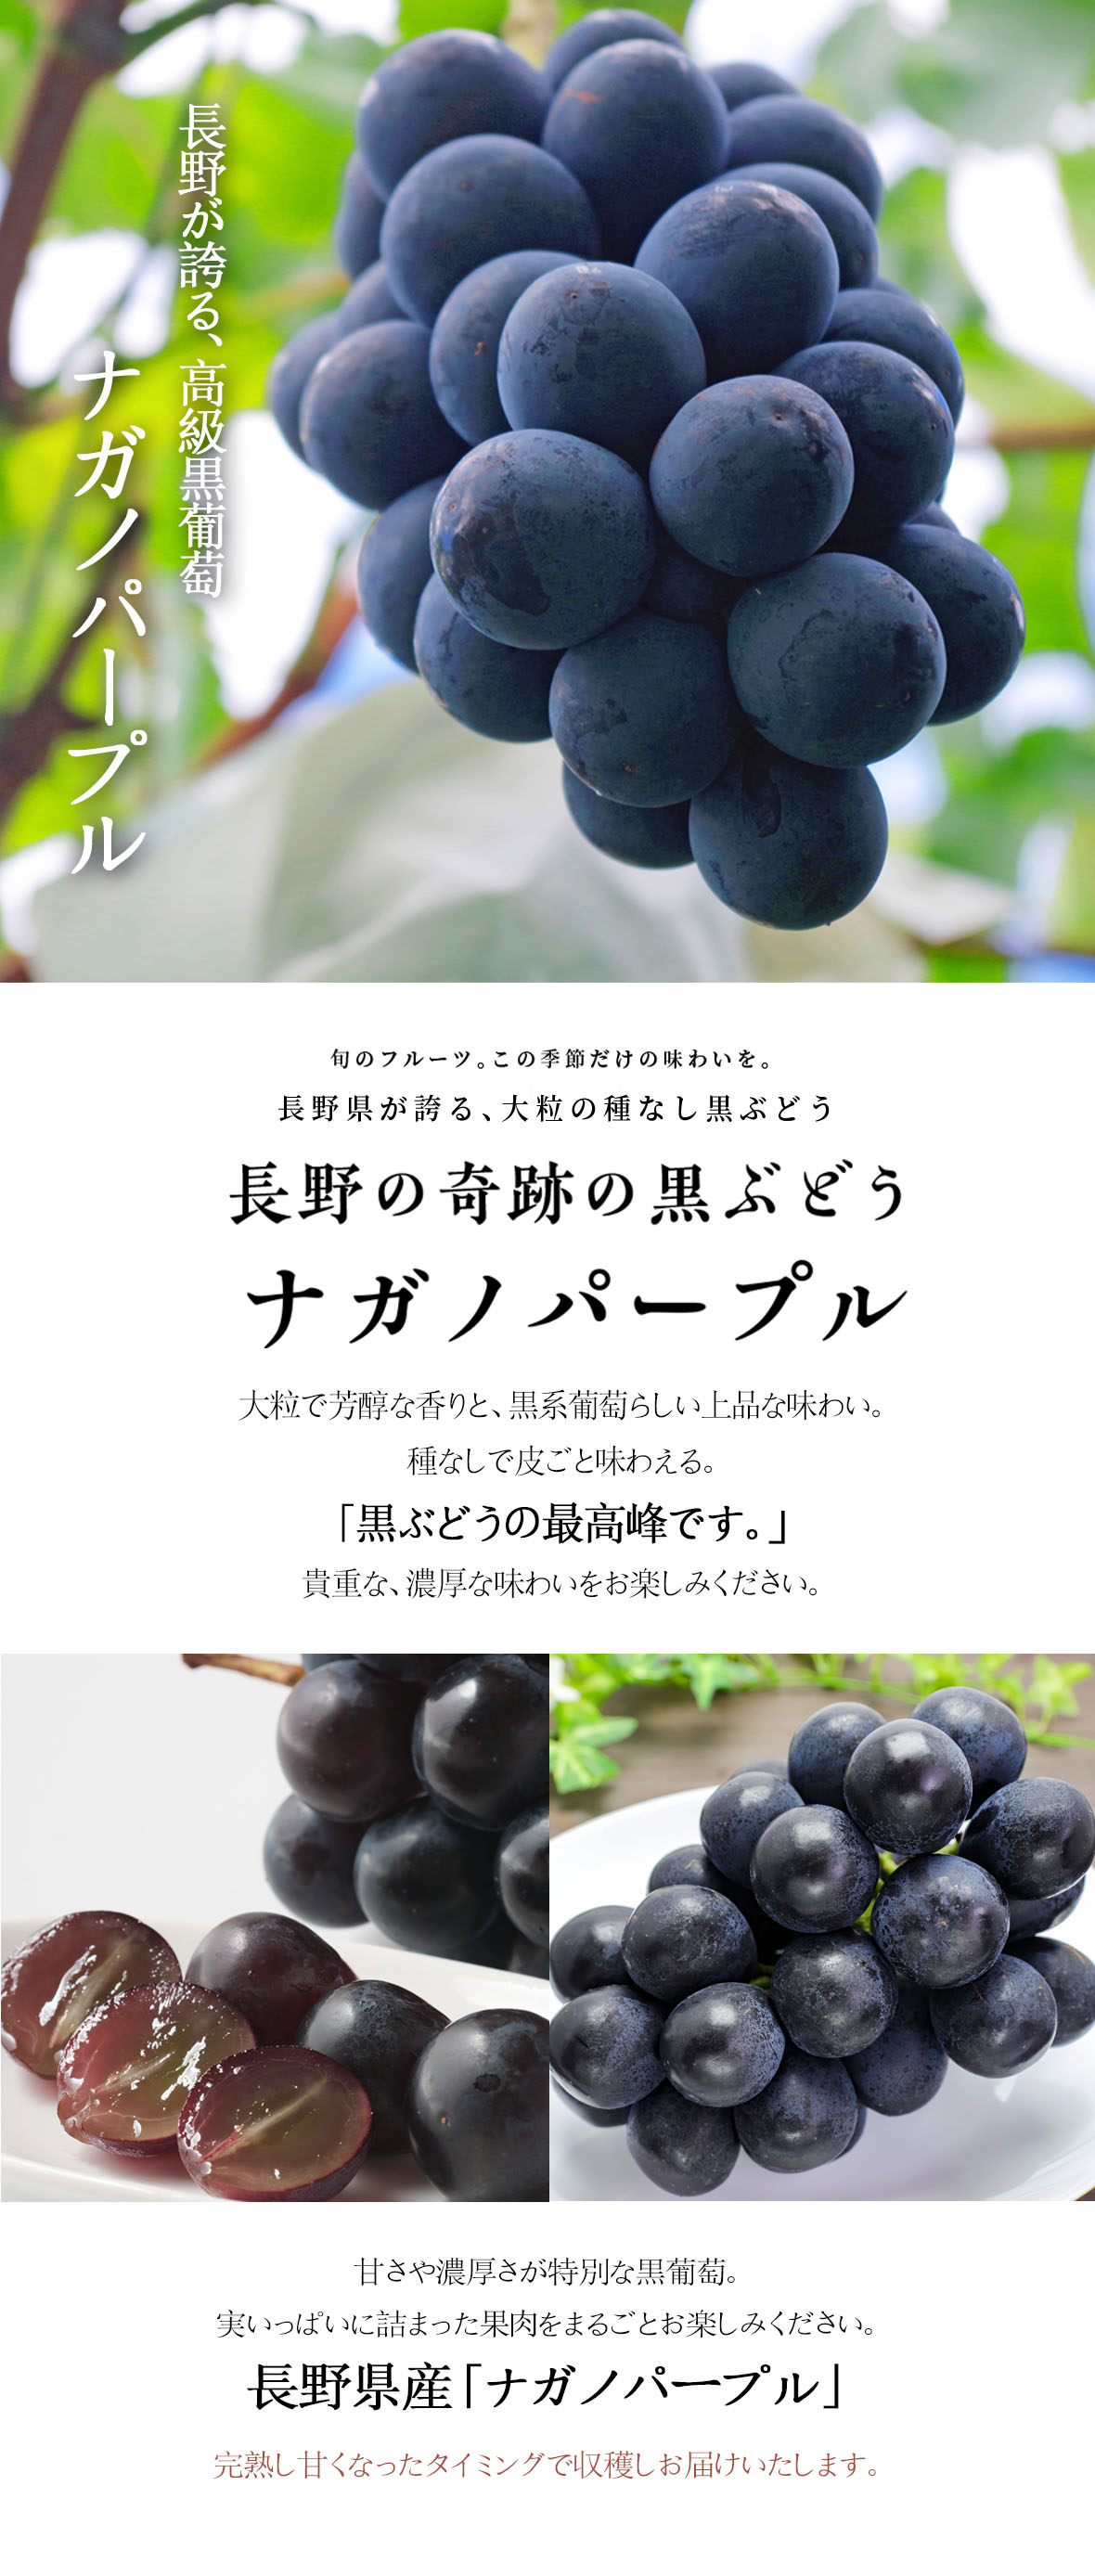 完売御礼 黒葡萄の最高峰 皮ごと食べられるぶどう長野県産 ナガノパープル 1kg 2 3房 販売終了9 25予定 ナガノパープル 技わざ